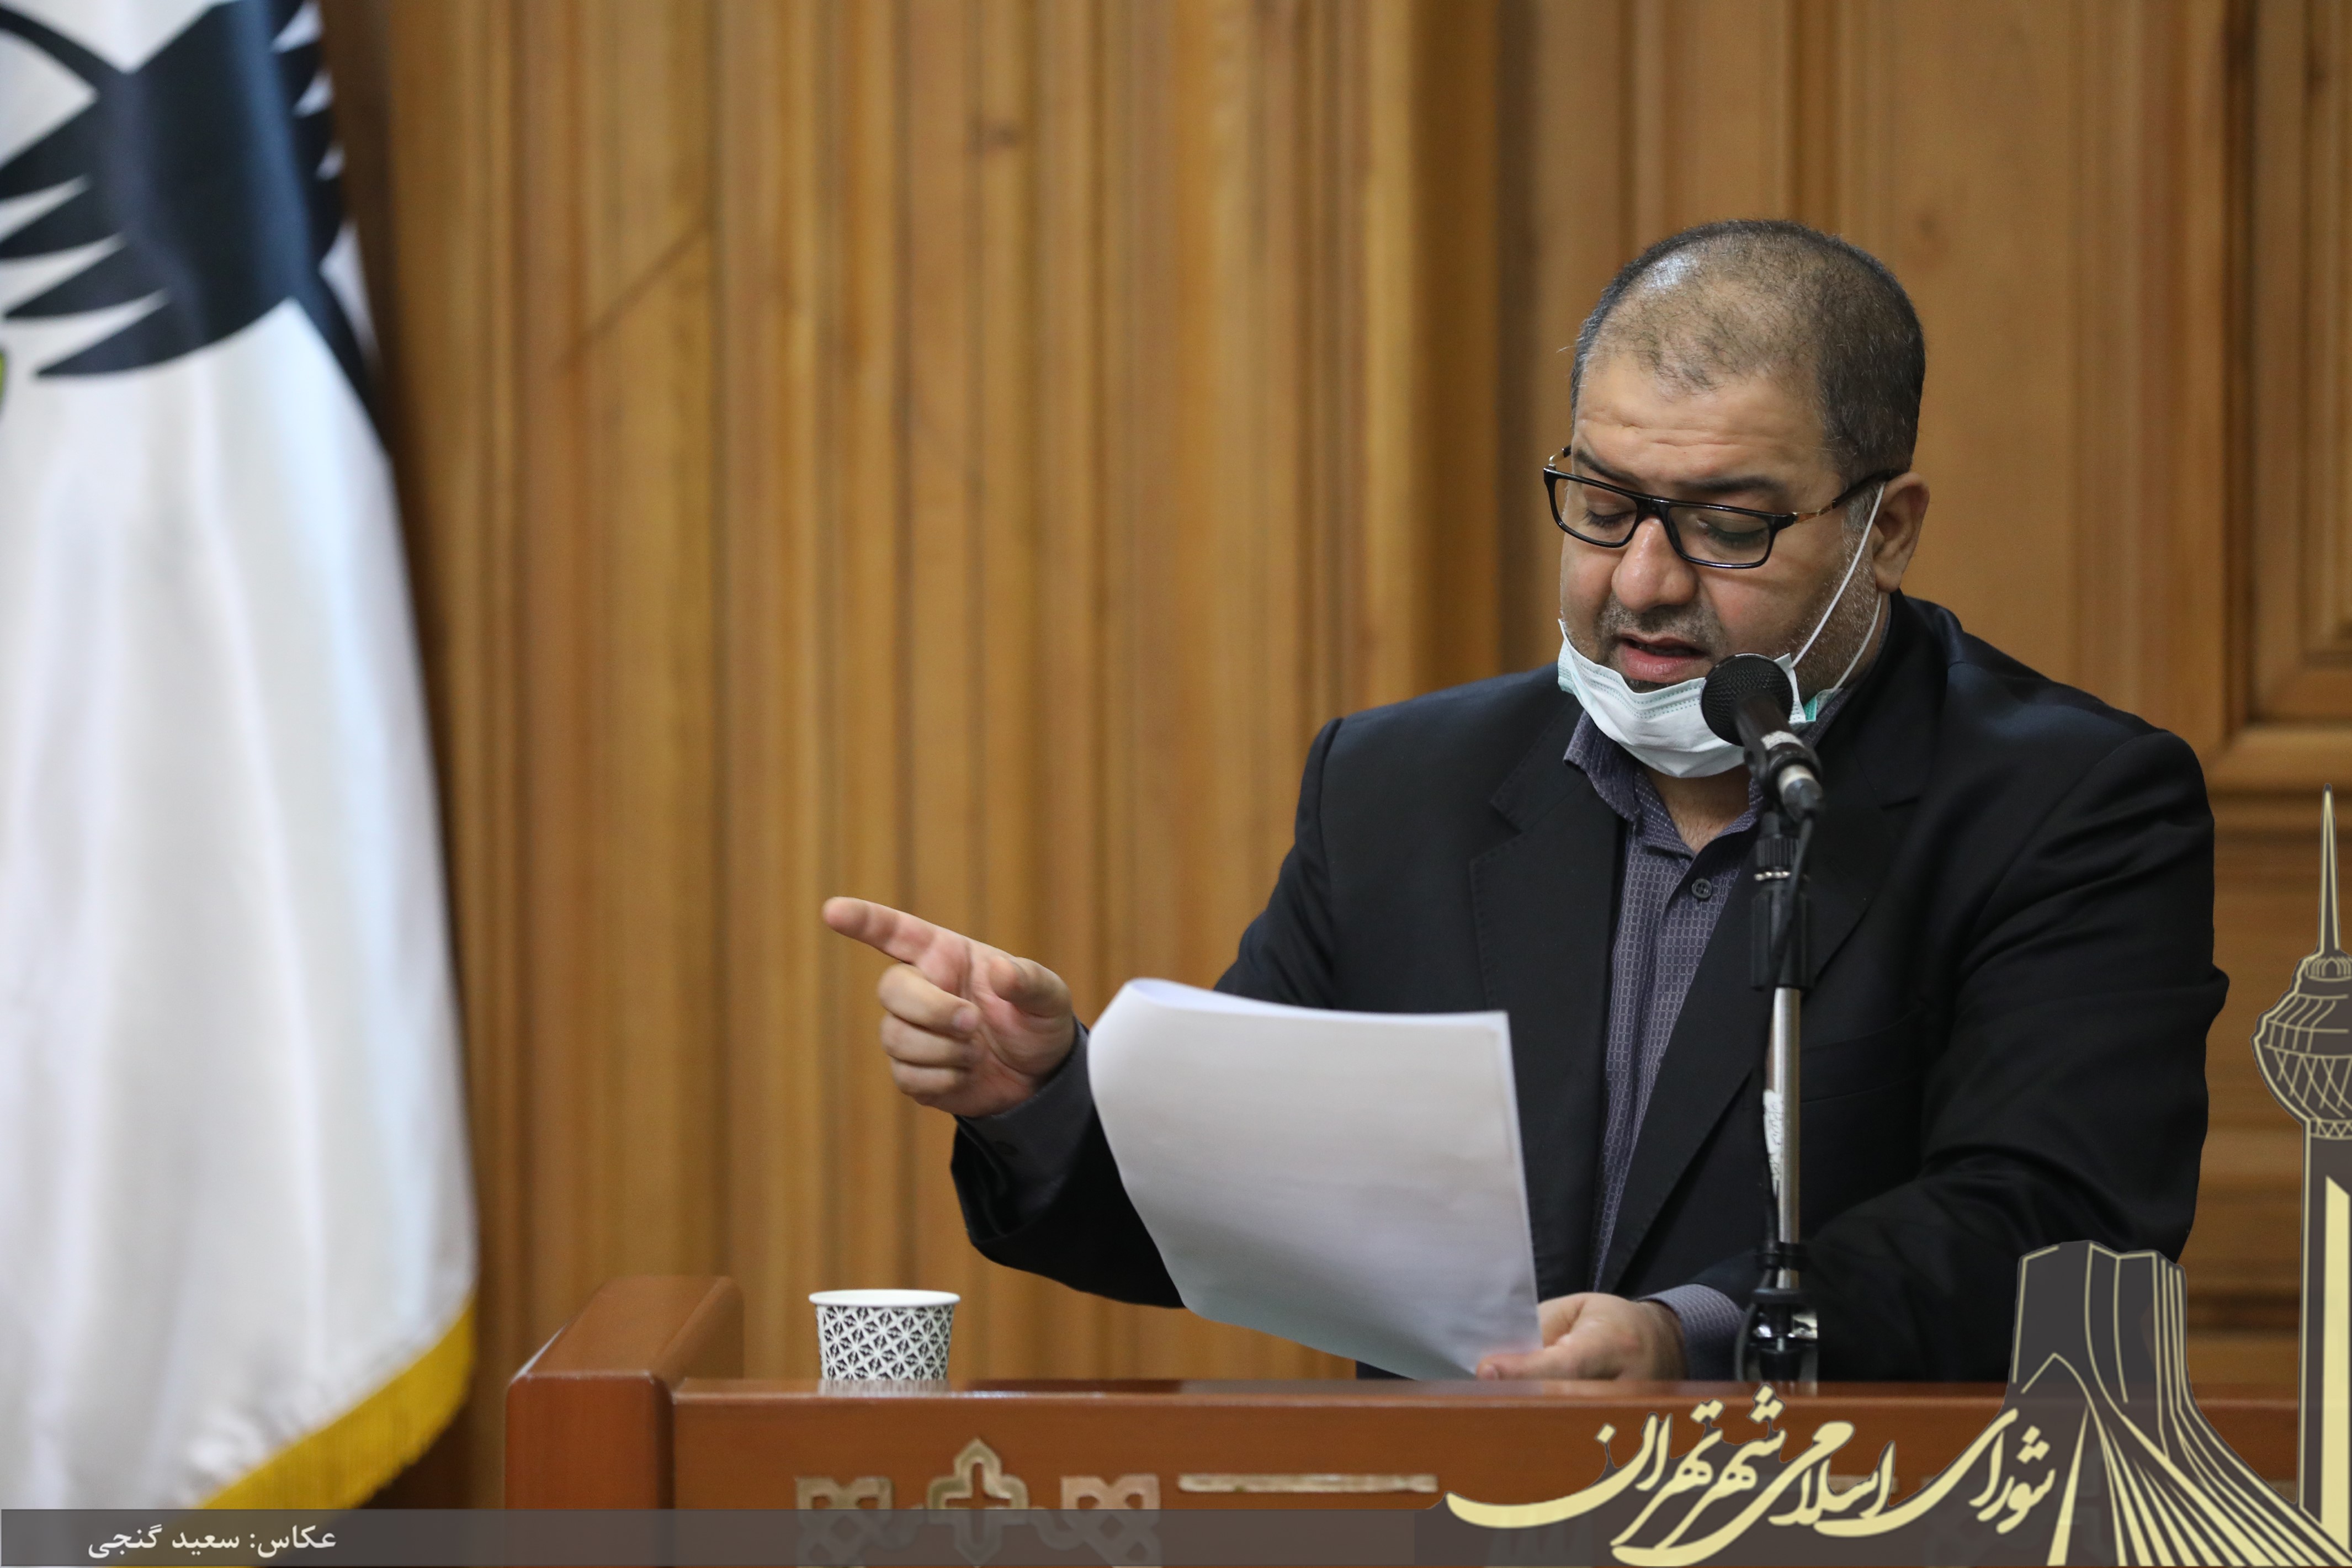 هشدار مجید فراهانی نسبت به وضعیت اقتصادی مدیریت شهری کسری بودجه شهرداری تهران در سال 1399 تا56 درصد خواهد بود